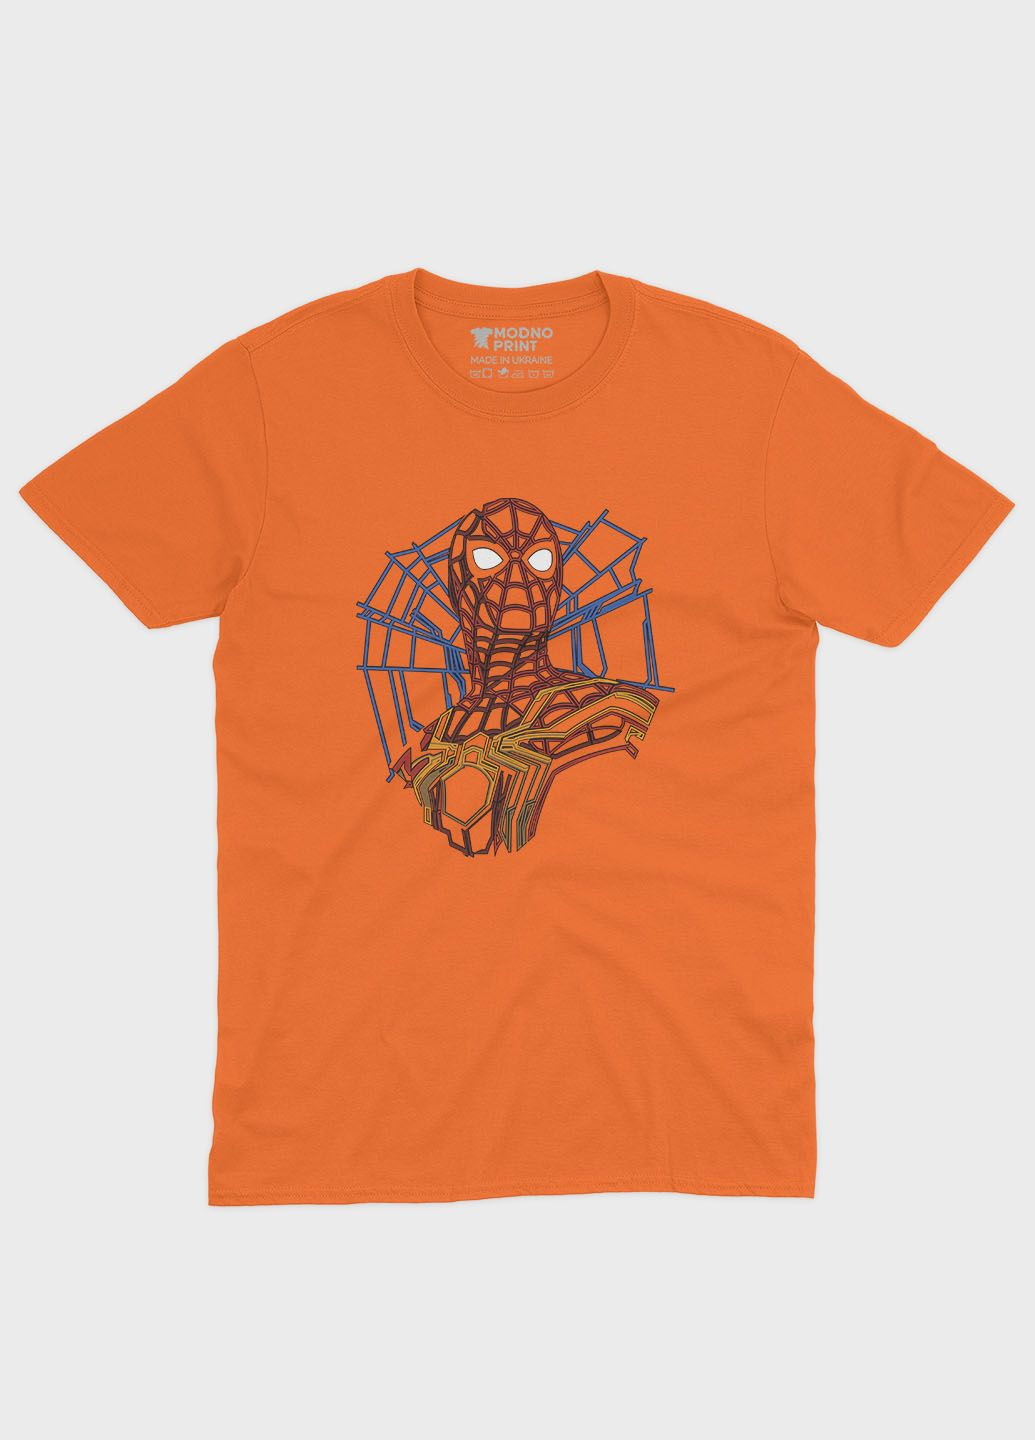 Оранжевая демисезонная футболка для мальчика с принтом супергероя - человек-паук (ts001-1-ora-006-014-007-b) Modno